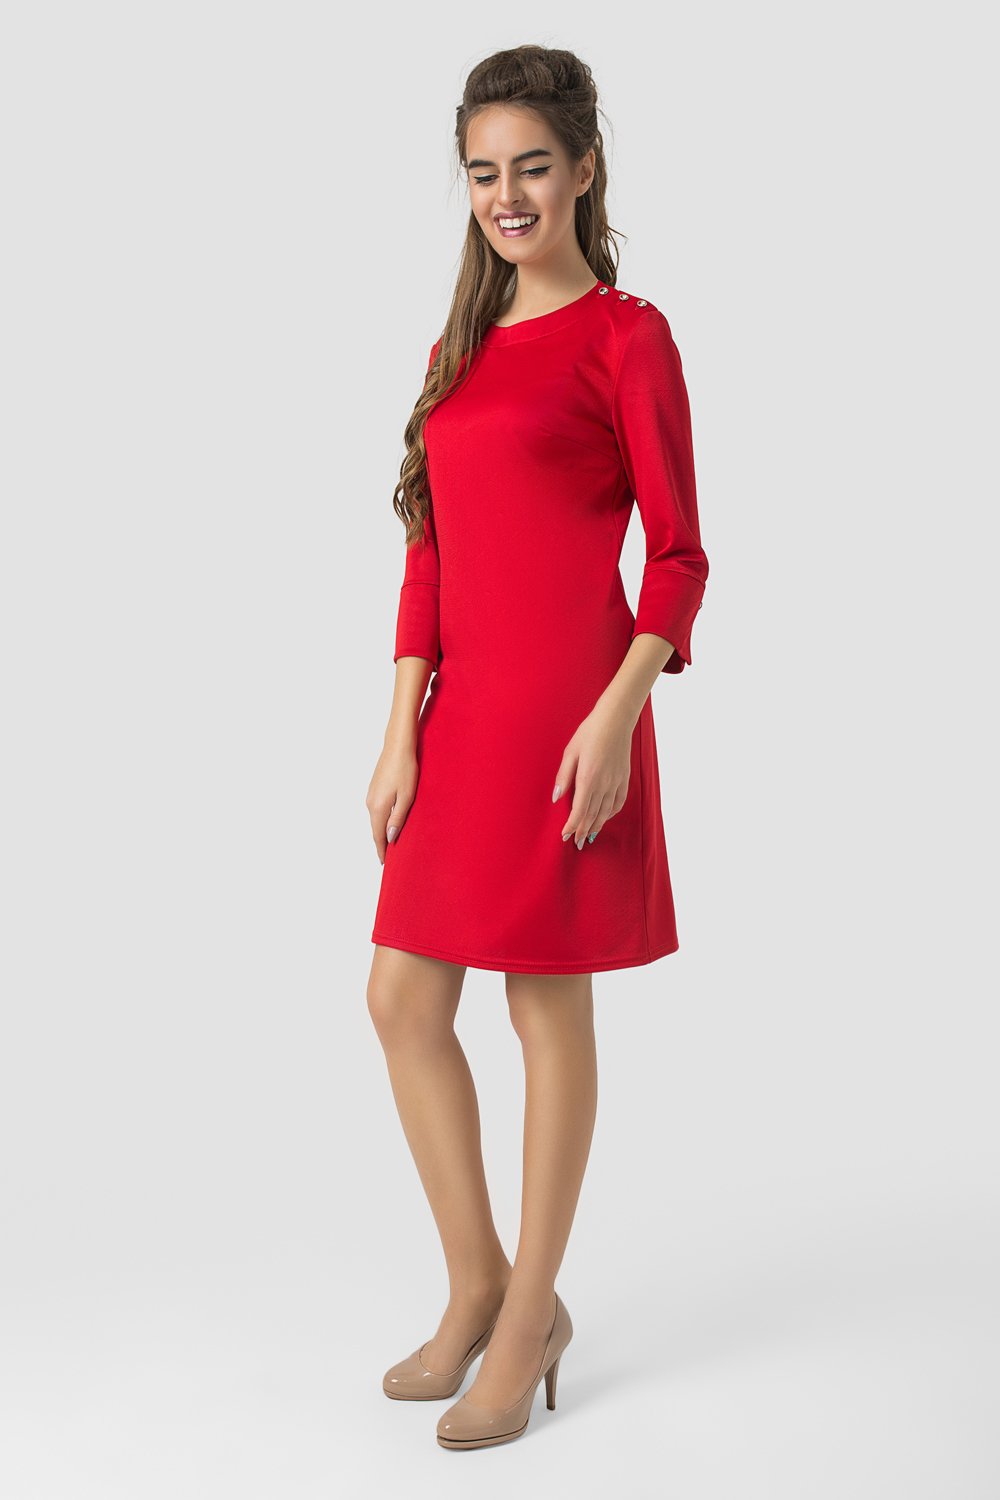 Классическое платье в красном цвете